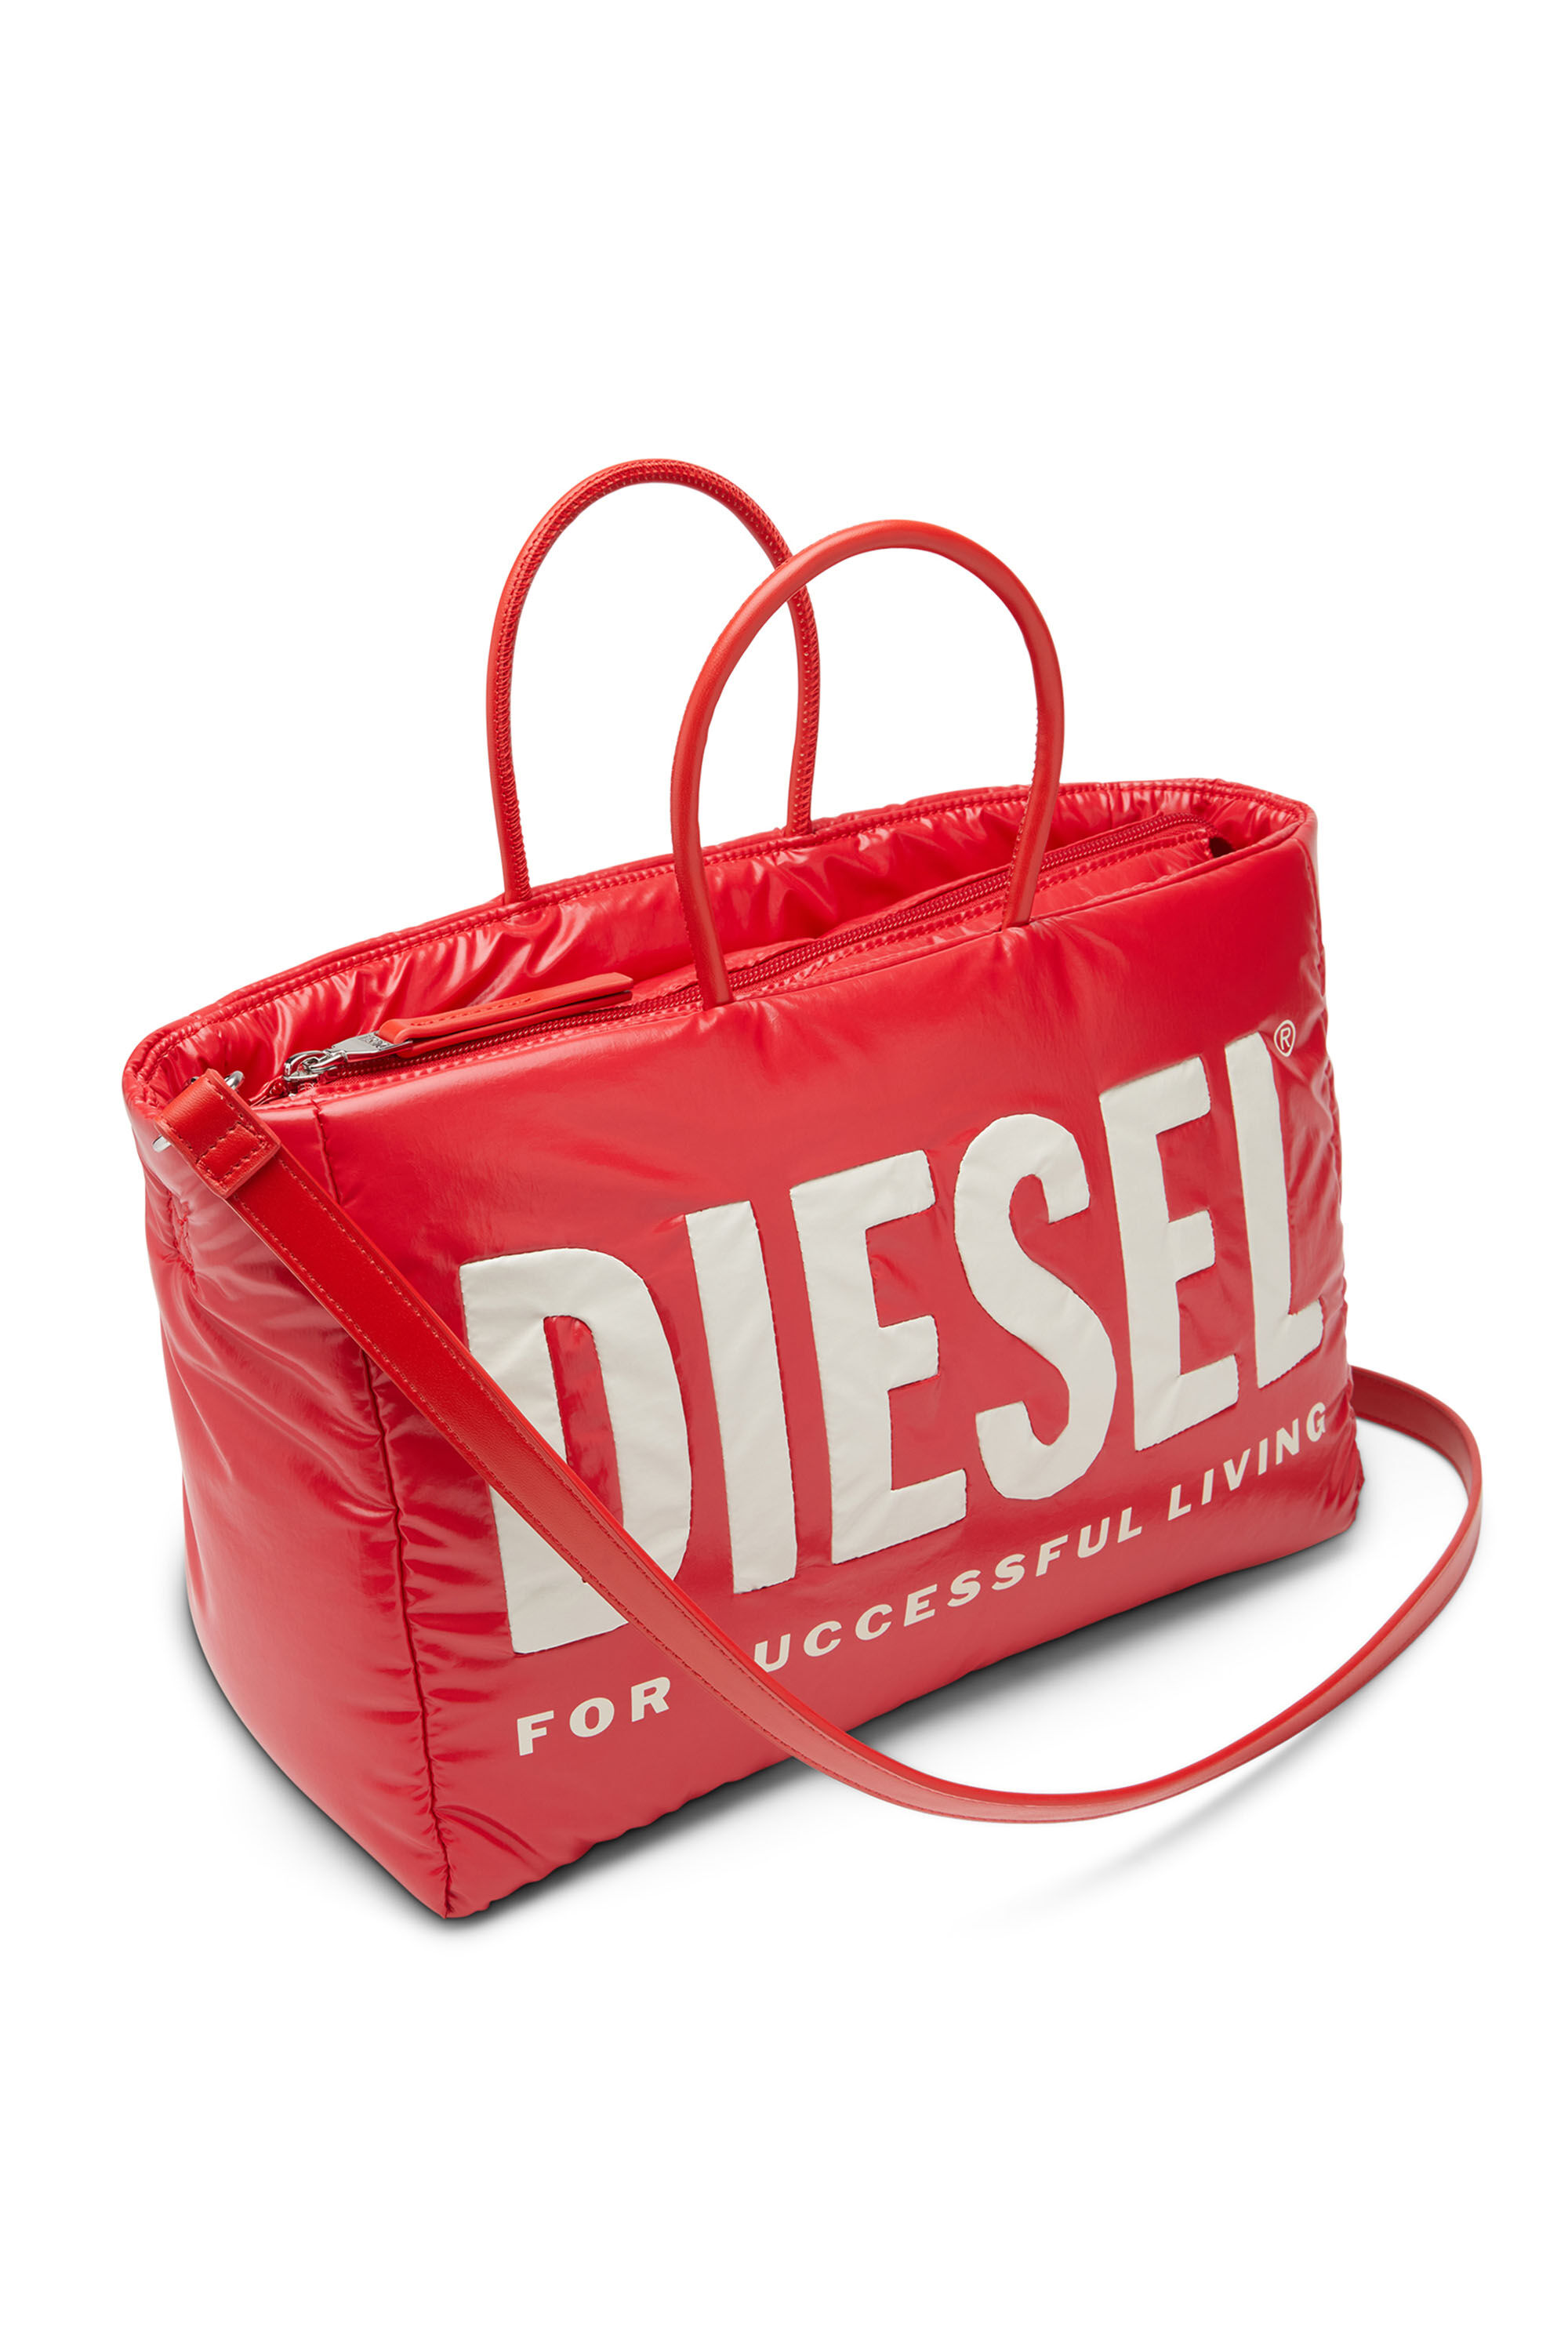 Diesel - PUFF DSL TOTE M X,  - Image 5